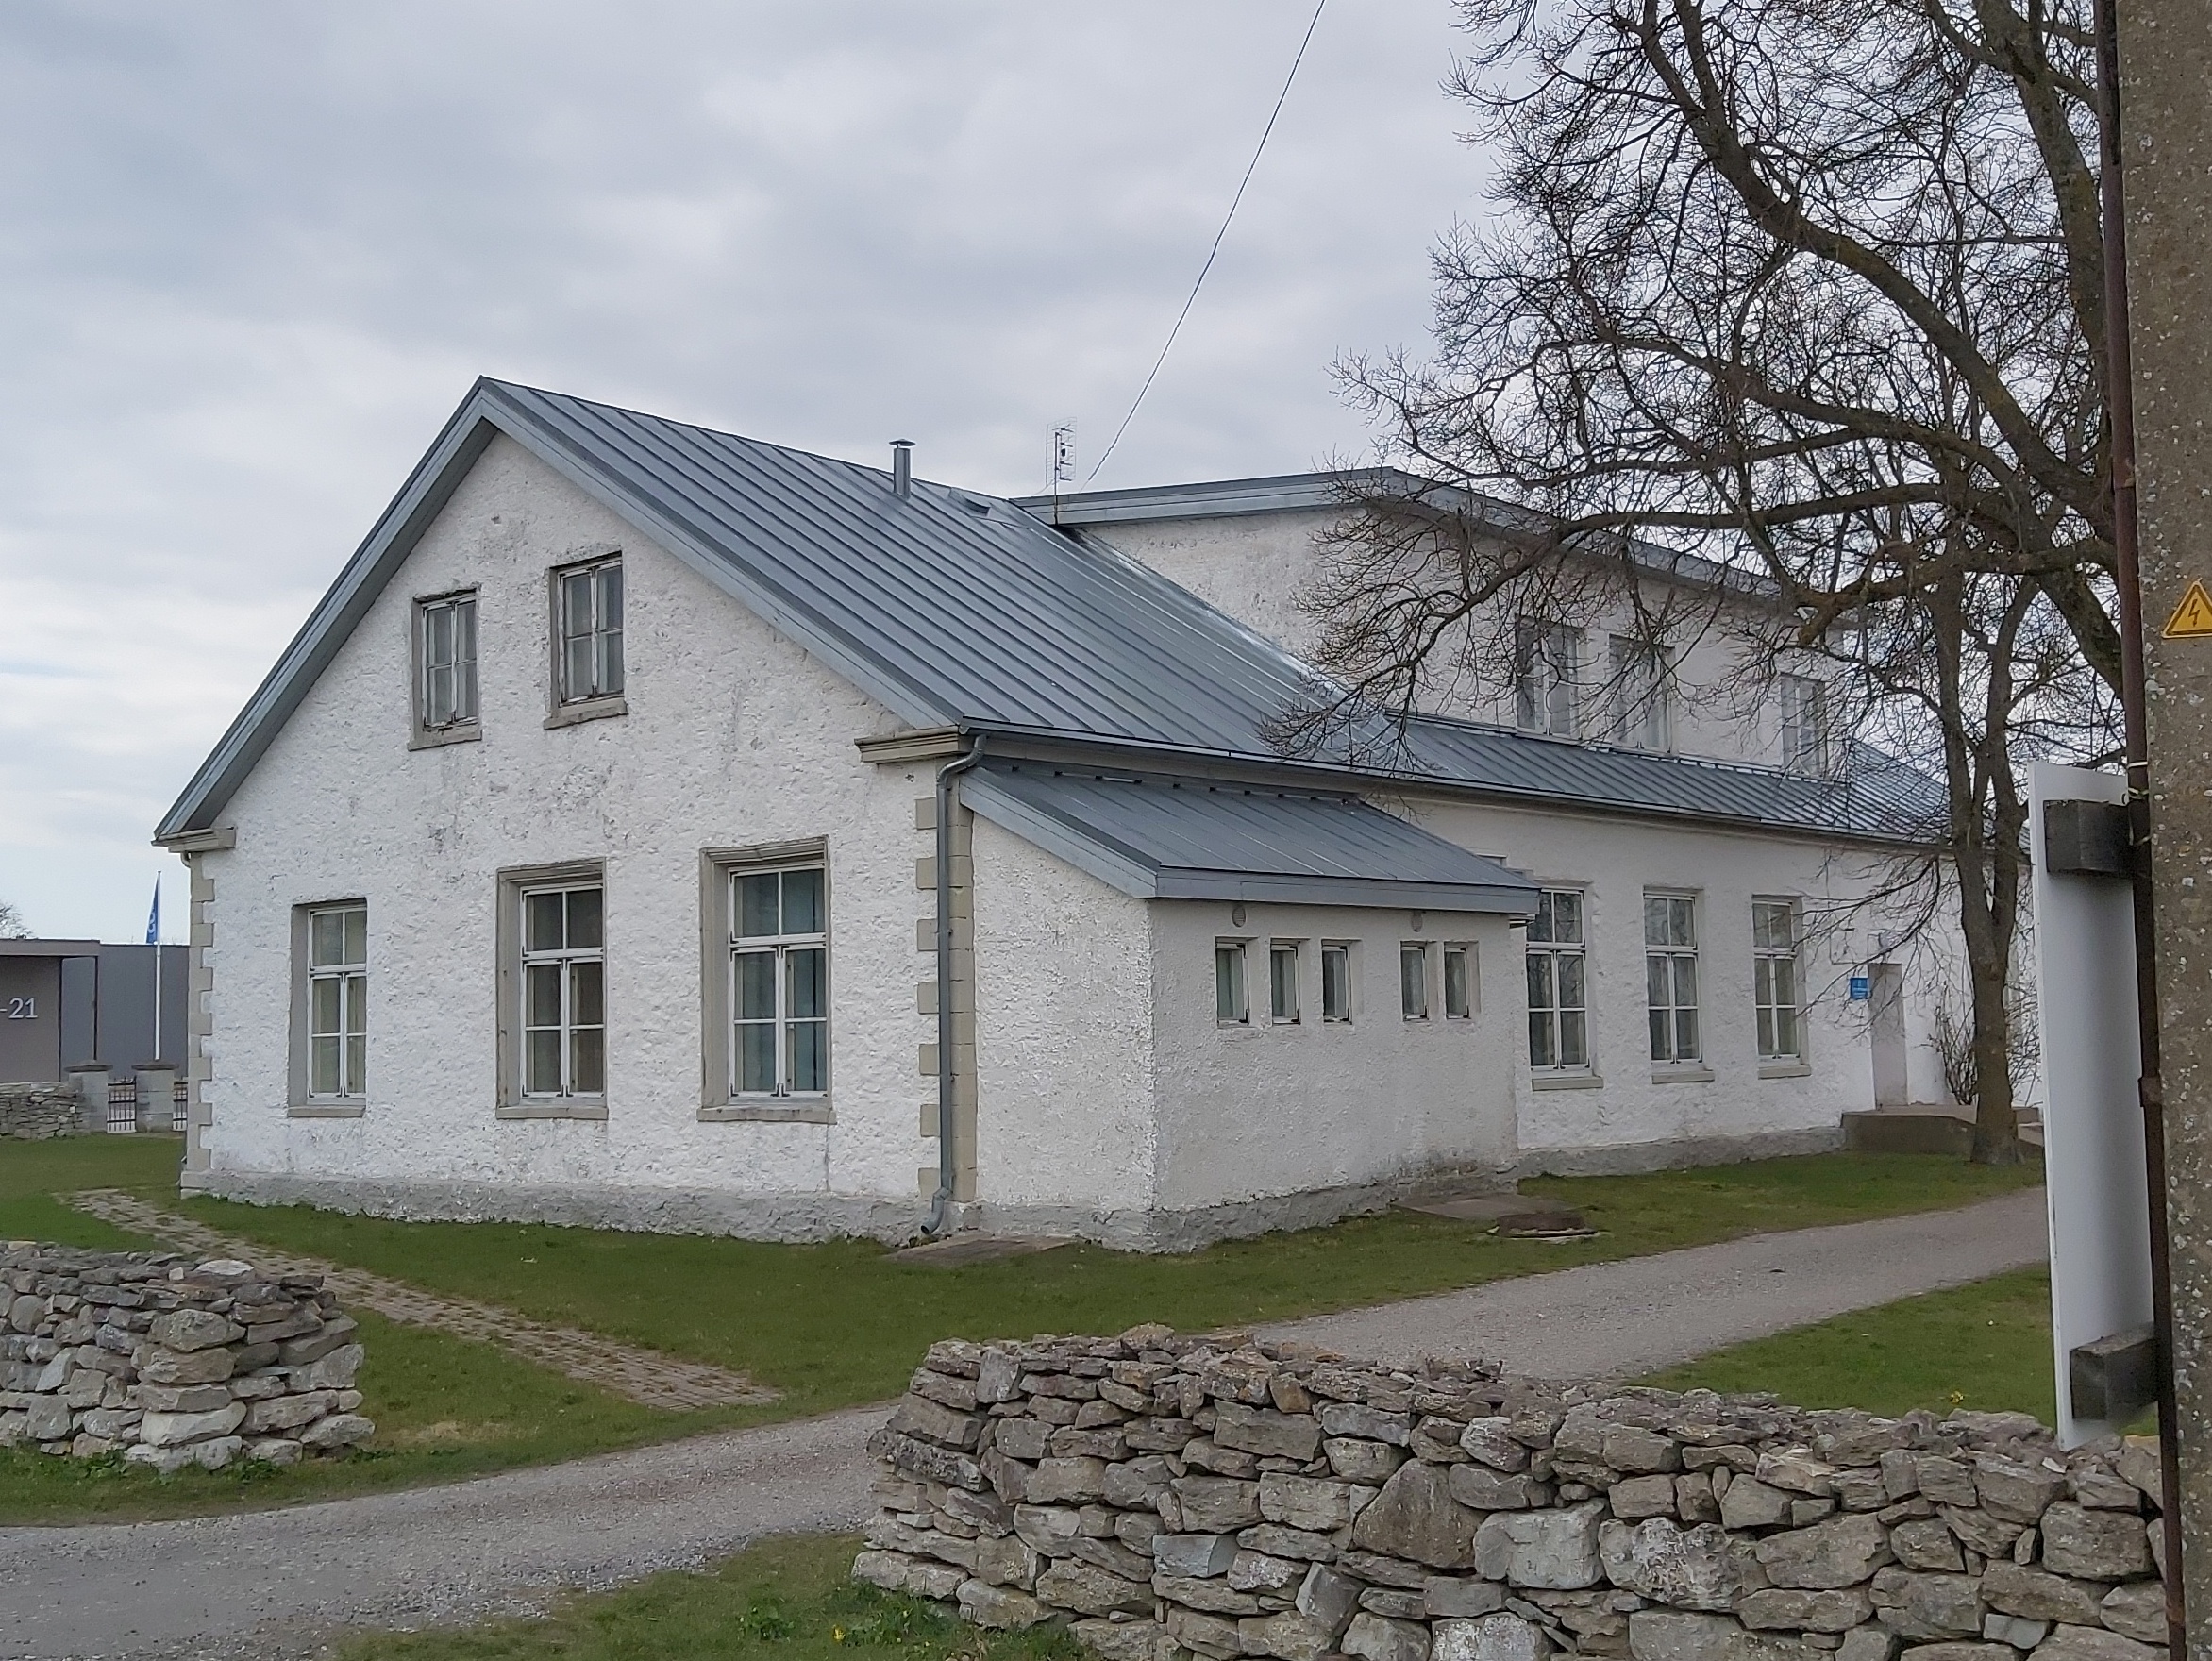 Salme Start School buildings in Saaremaa rephoto